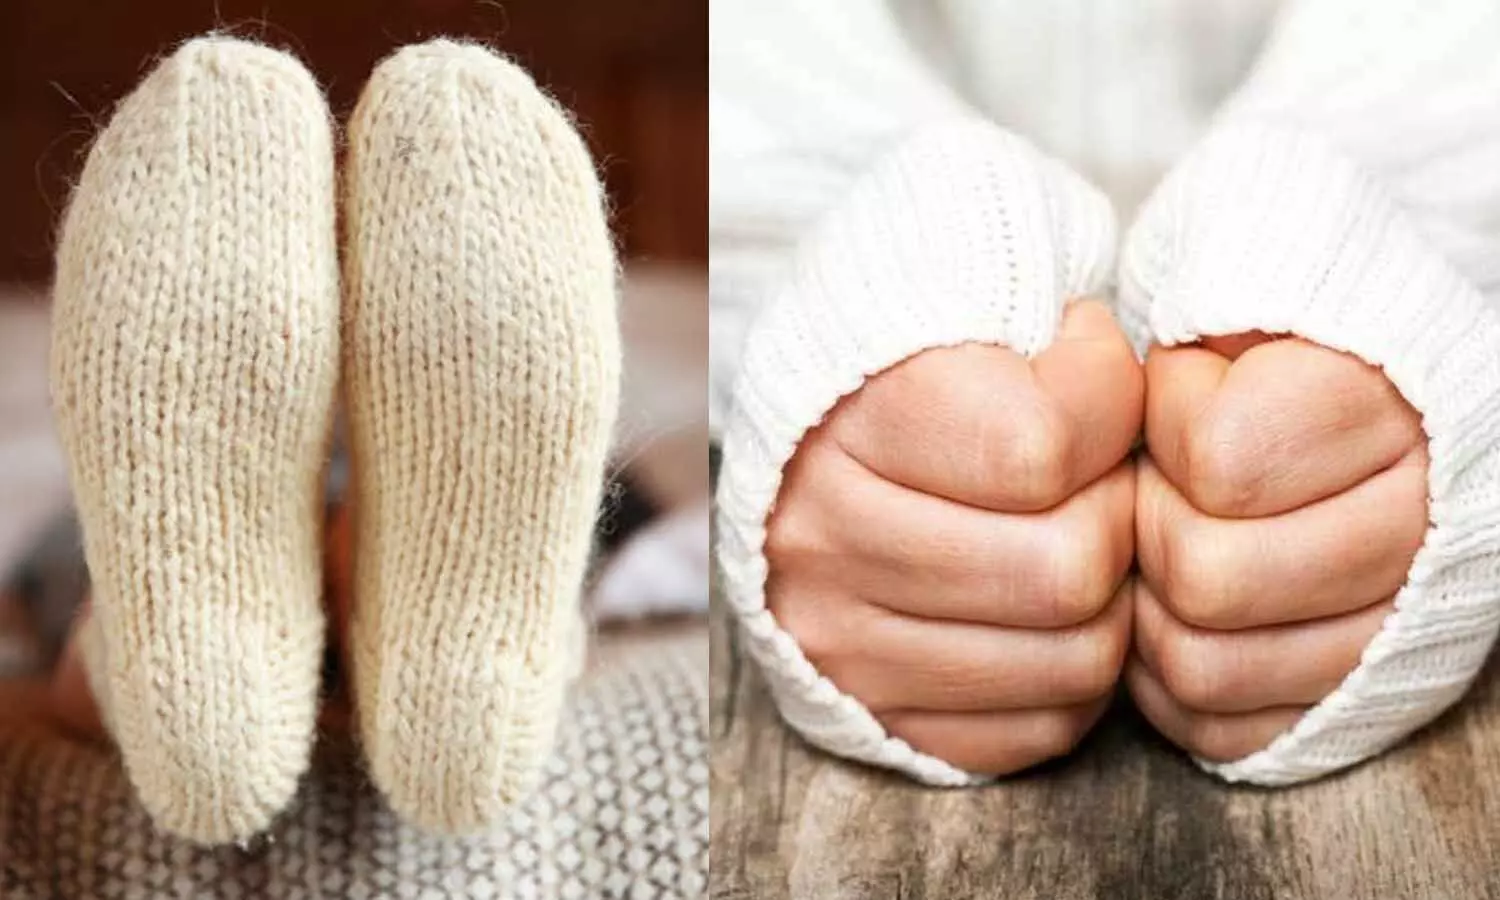 सर्दी में अगर हाथ पैर रहते हैं ठंडे तो आजमाएं ये उपाय, तुरंत मिलेगा आराम